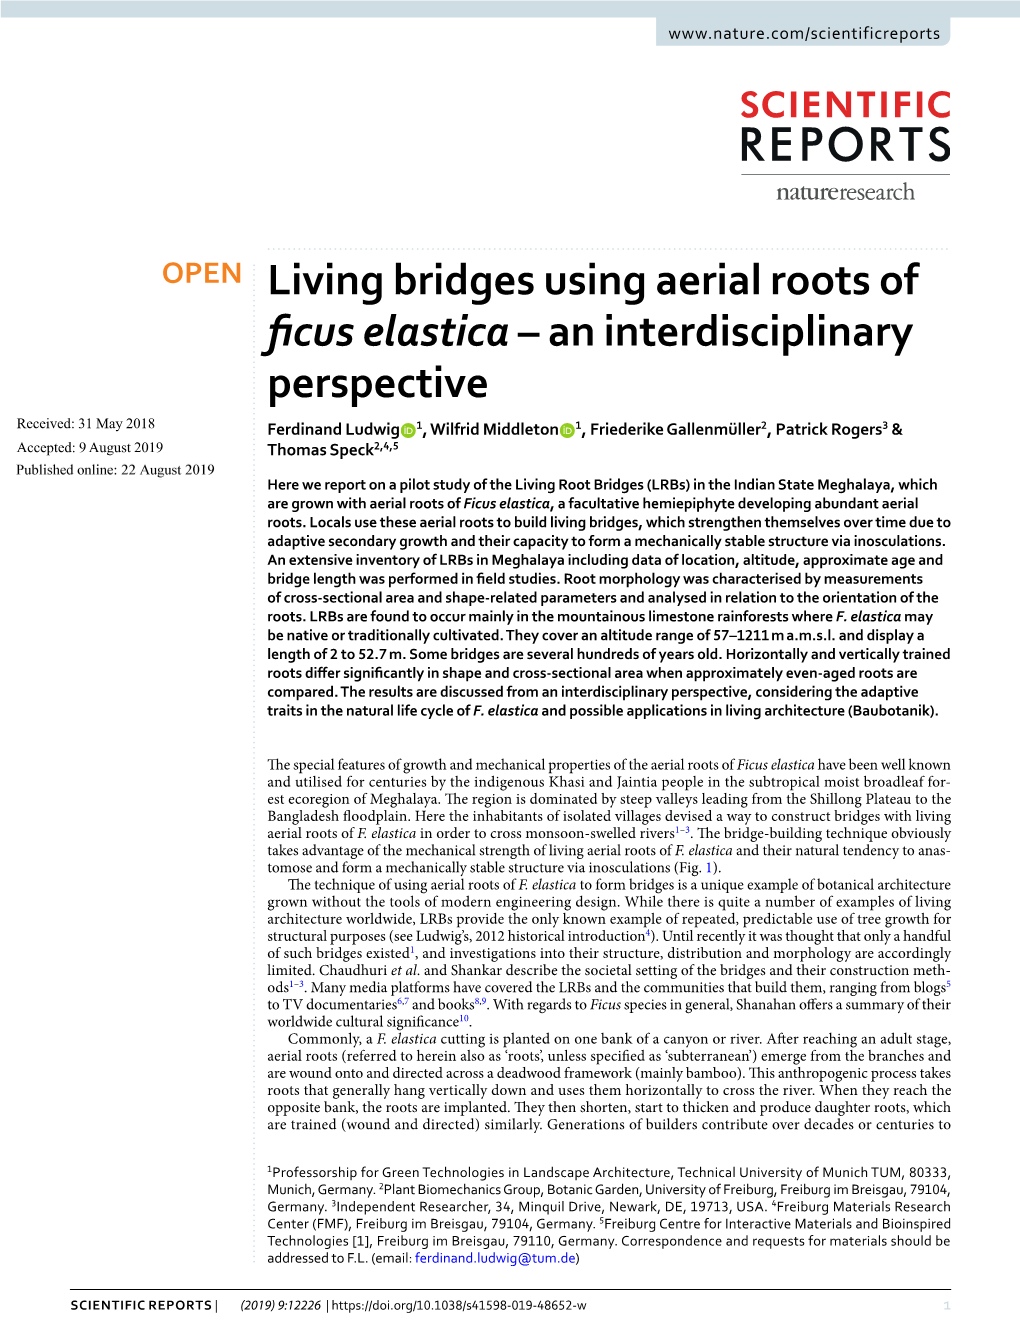 Living Bridges Using Aerial Roots of Ficus Elastica